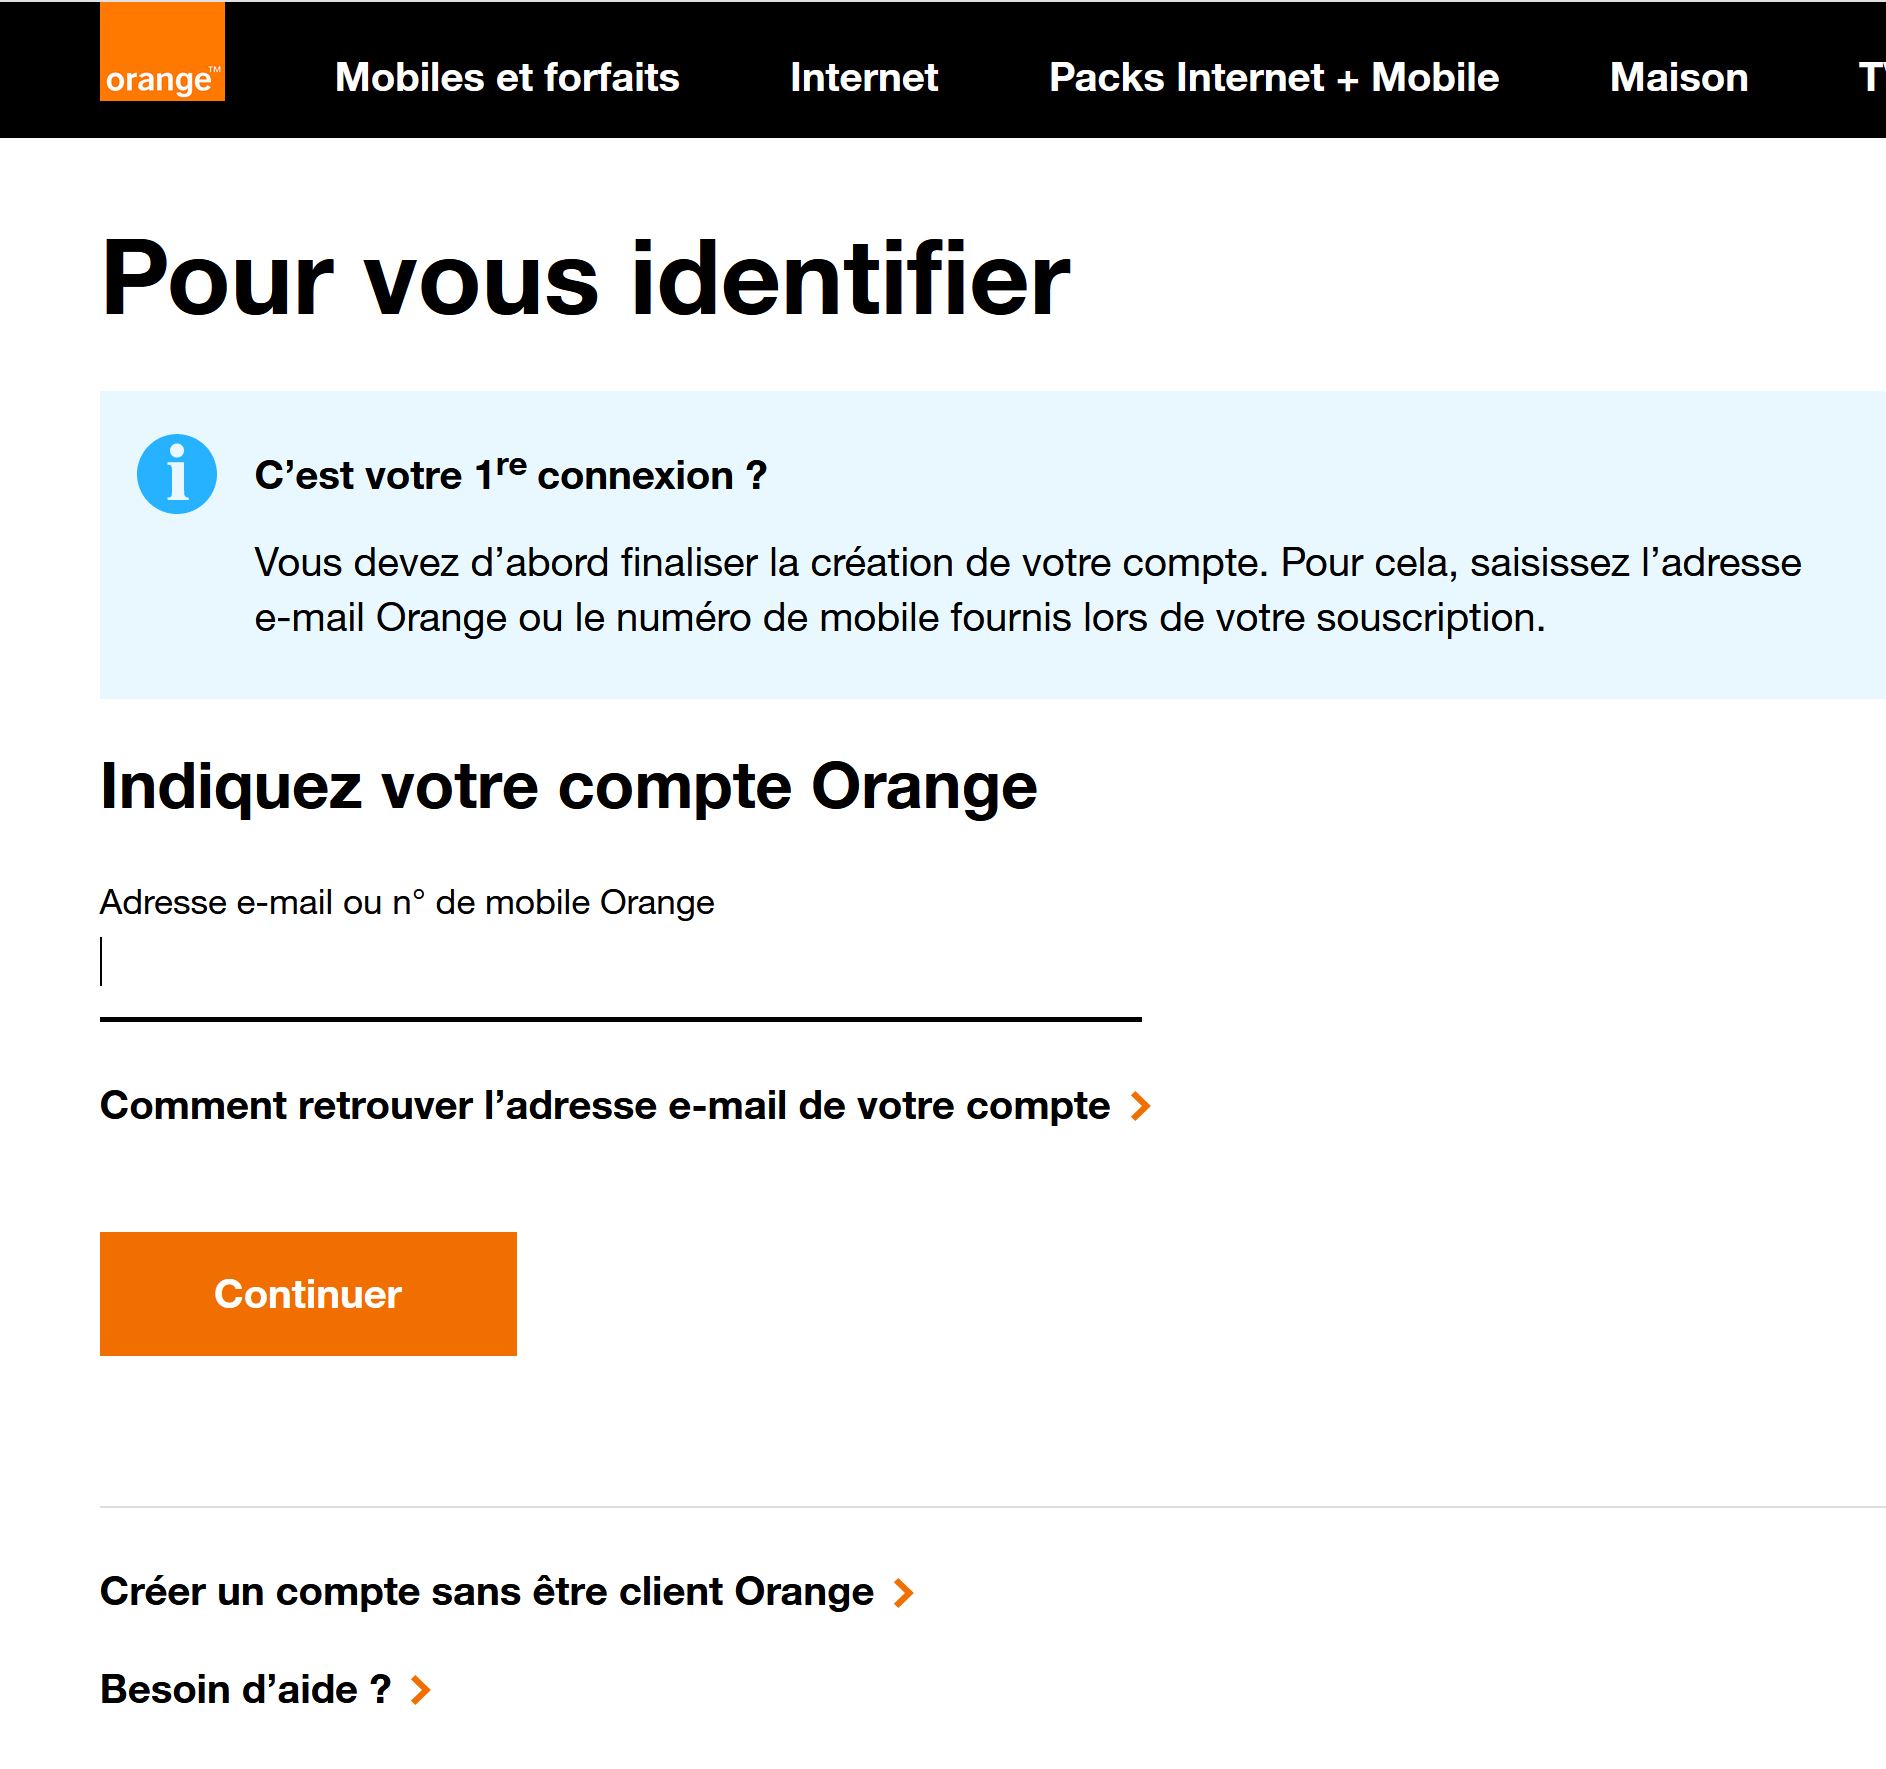 Introduce 52+ imagen portail orange mail identifiez vous - fr ...